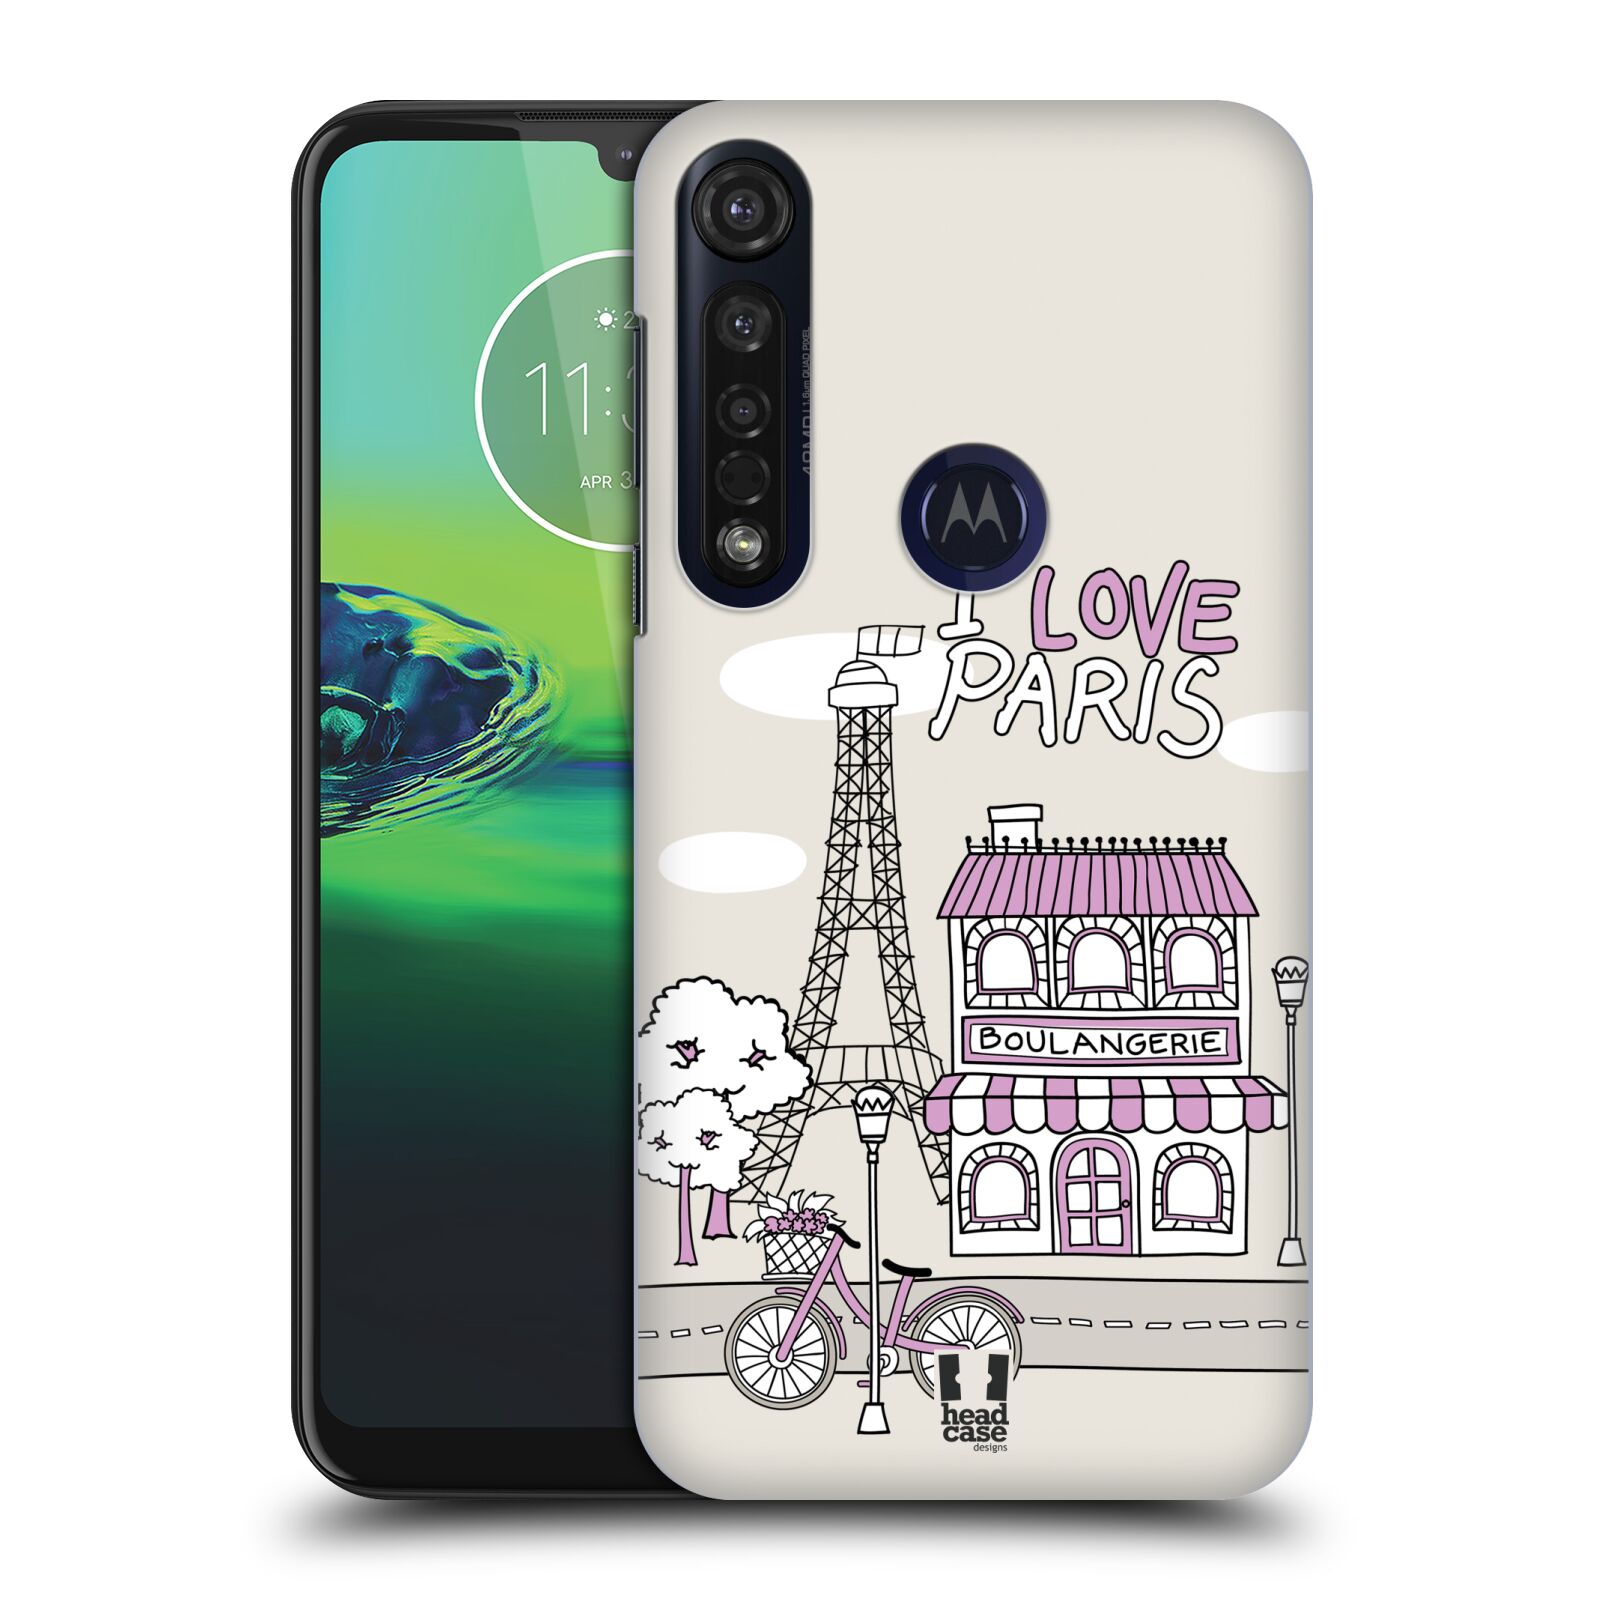 Pouzdro na mobil Motorola Moto G8 PLUS - HEAD CASE - vzor Kreslená městečka FIALOVÁ, Paříž, Francie, I LOVE PARIS